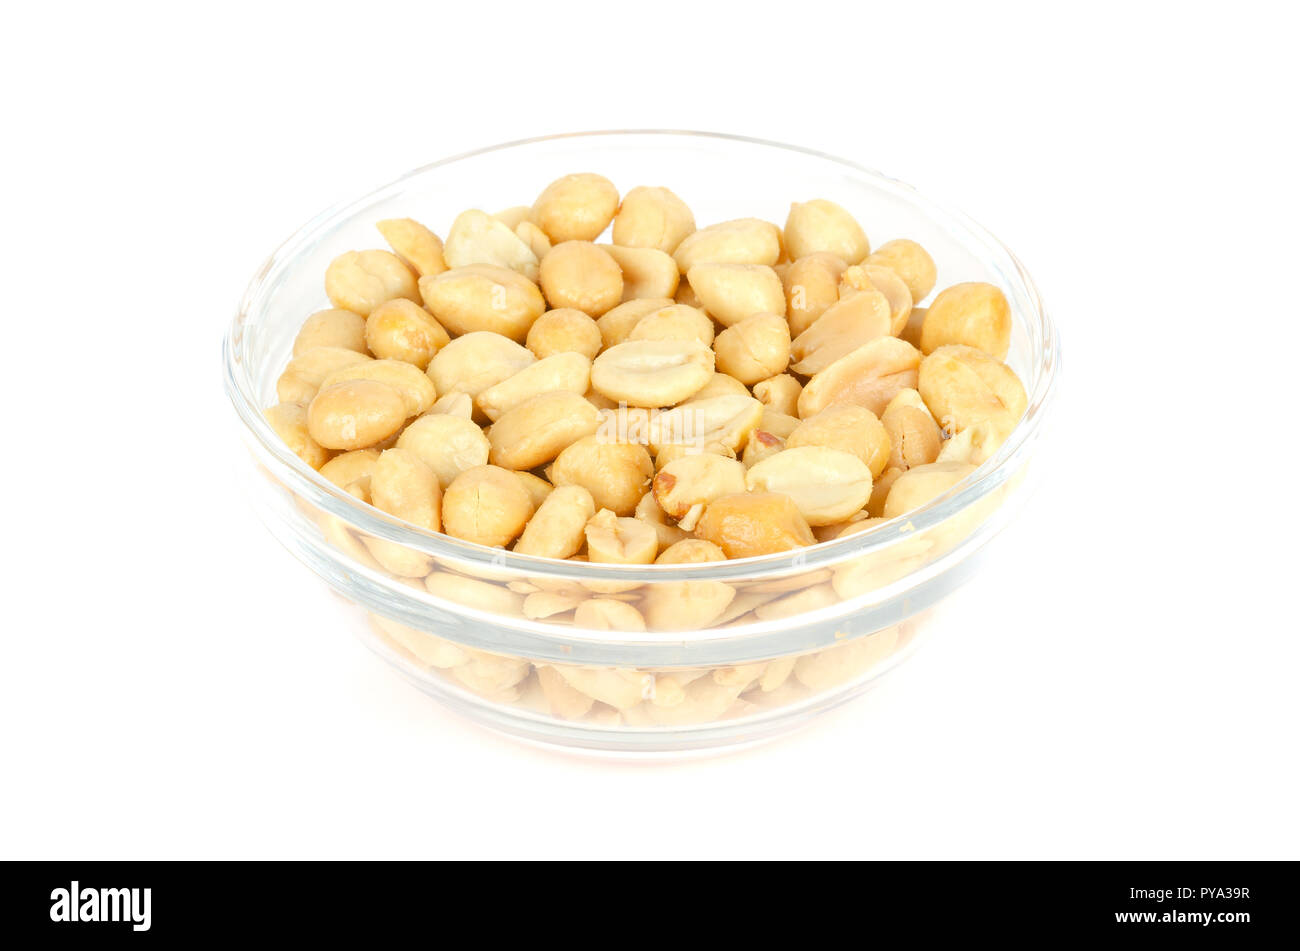 Geröstete und gesalzene Erdnüsse im Glas Schüssel. Ohne Schale Arachis Hypogaea, auch genannt Erdnuss oder goober, verwendet als Snack. Isolierte Makro essen Foto. Stockfoto